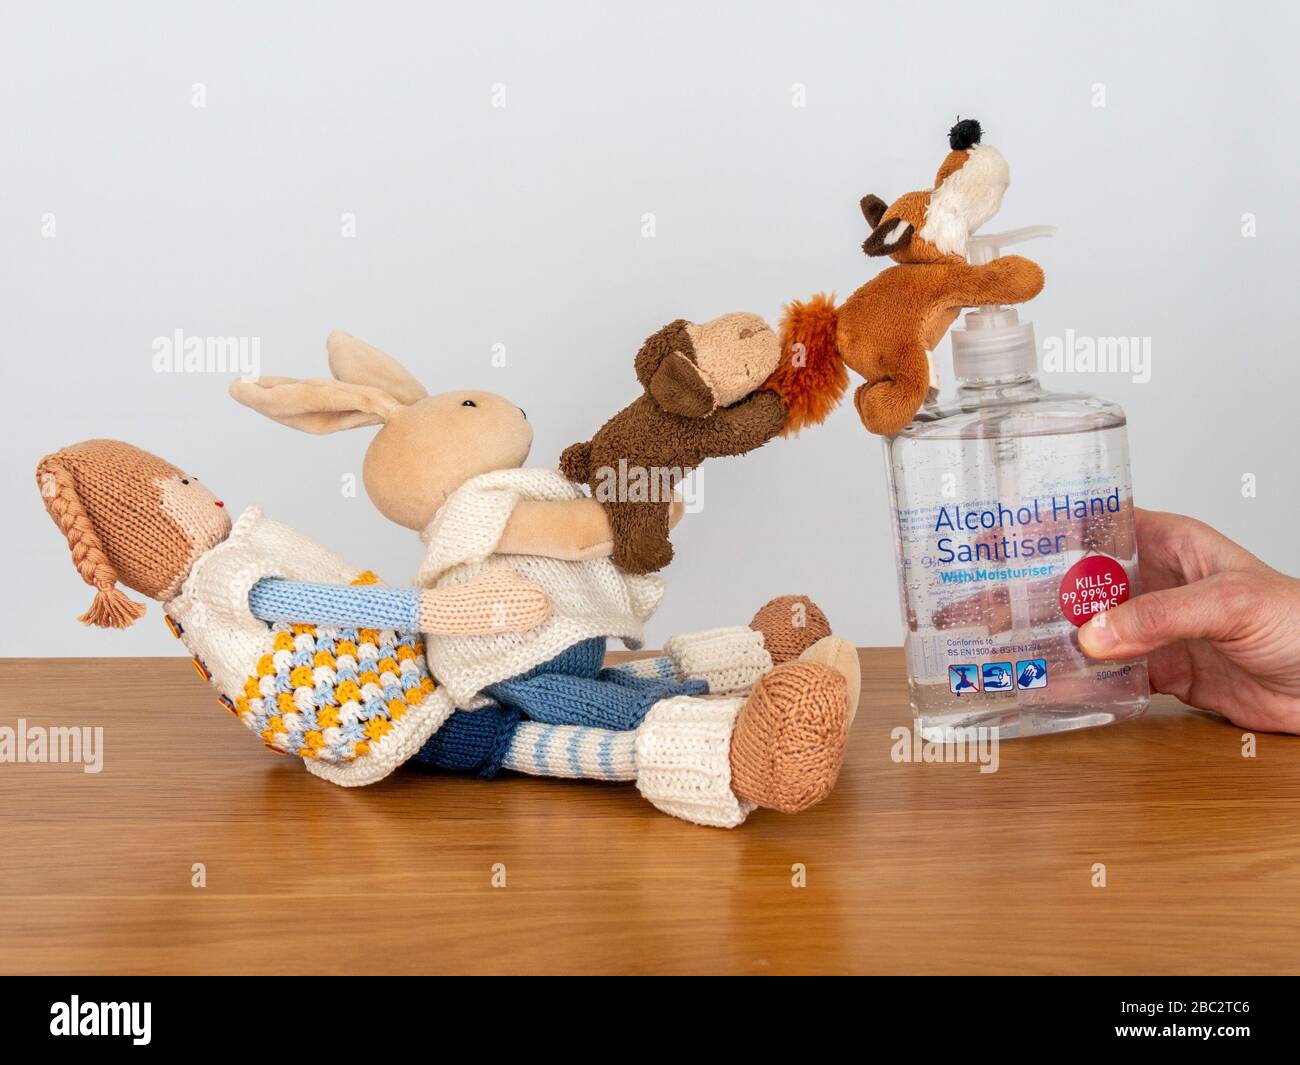 Imagen conceptual que ilustra la escasez de gel desinfectante para manos como juguetes peludos tratan desesperadamente de colgar en una botella de gel desinfectante para manos. Foto de stock